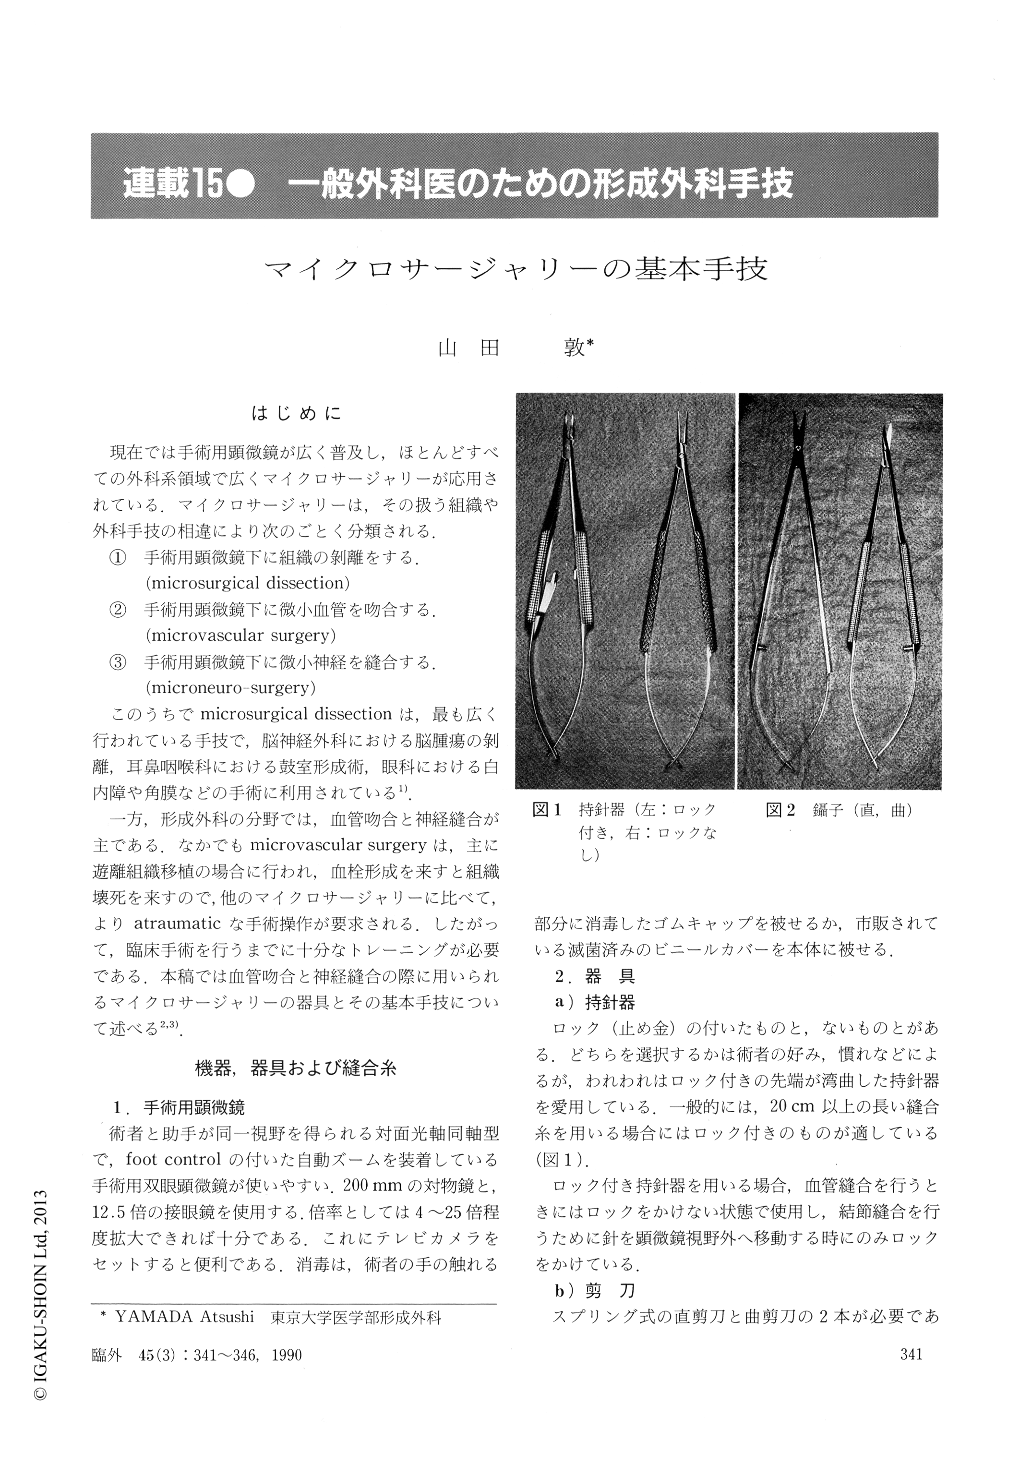 マイクロサージャリーの基本手技 (臨床外科 45巻3号) | 医書.jp